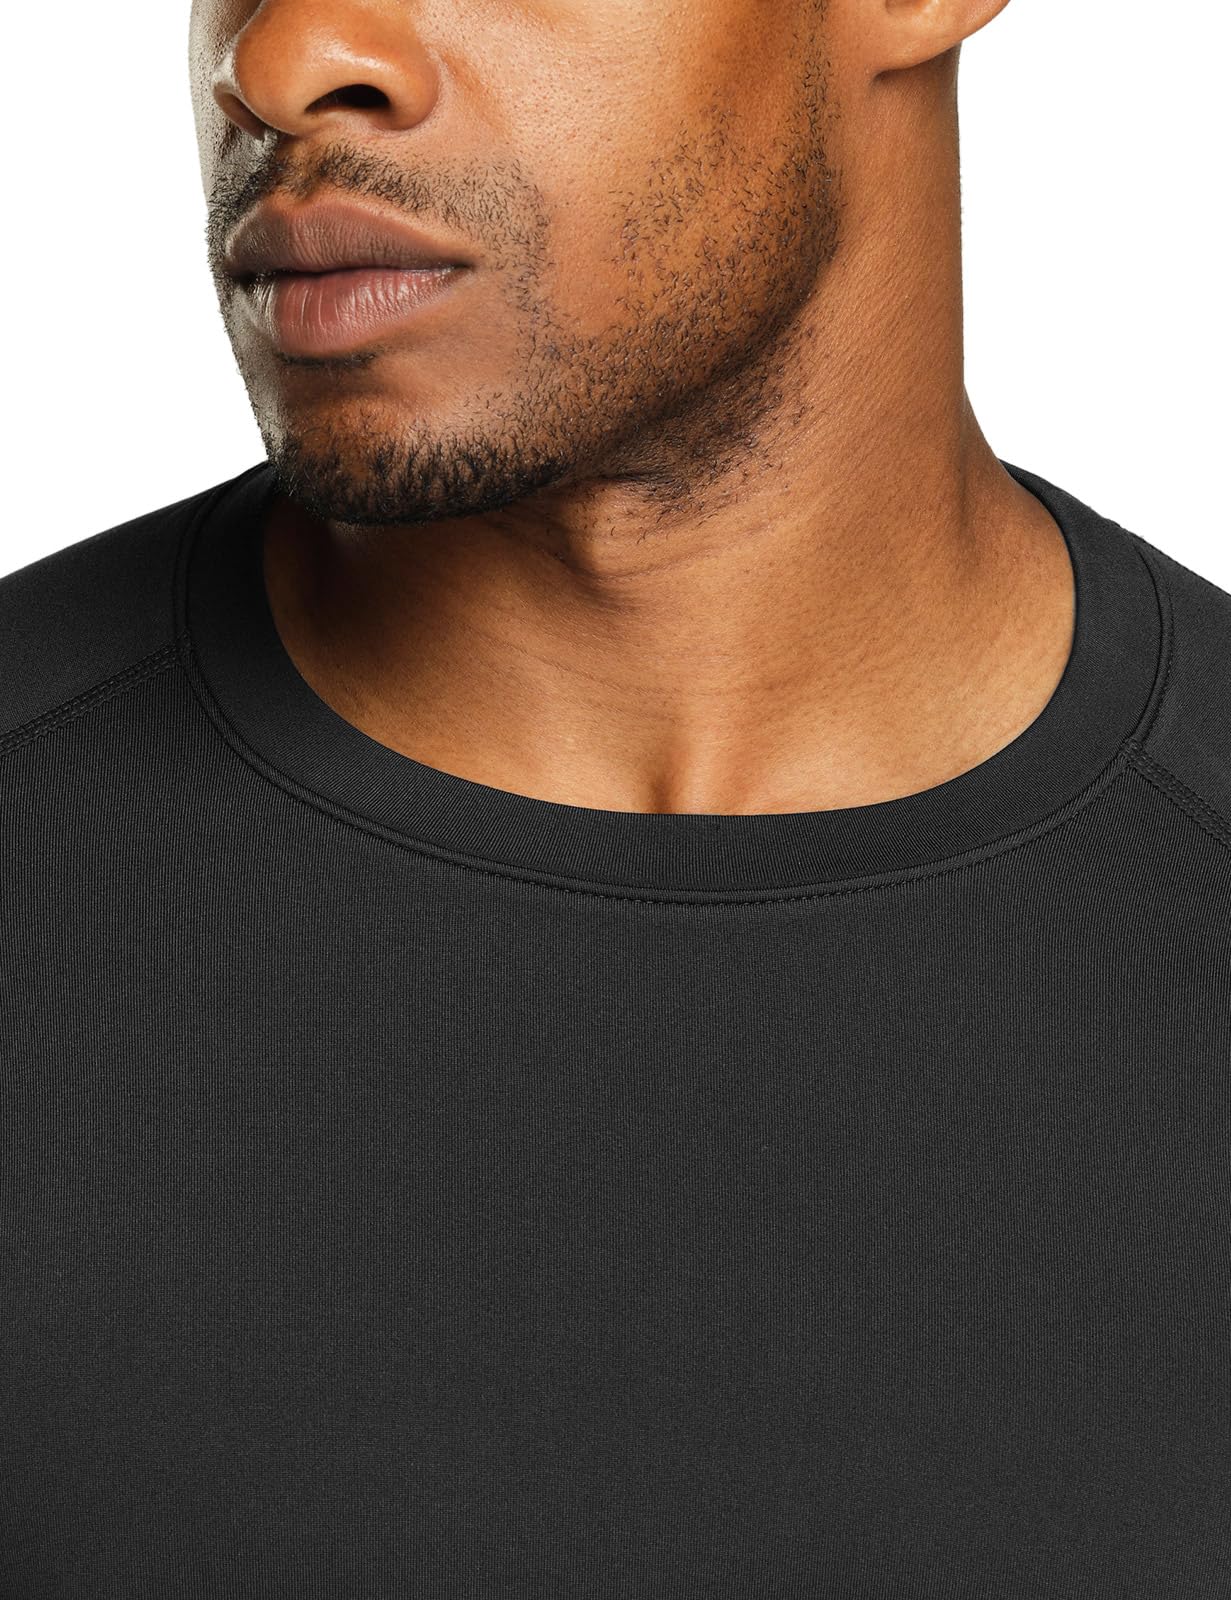 Mua TSLA or Pack Men's Thermal Long Sleeve Compression Shirts, Athletic  Base Layer Top, Winter Gear Running T-Shirt trên Amazon Mỹ chính hãng 2023  Giaonhan247